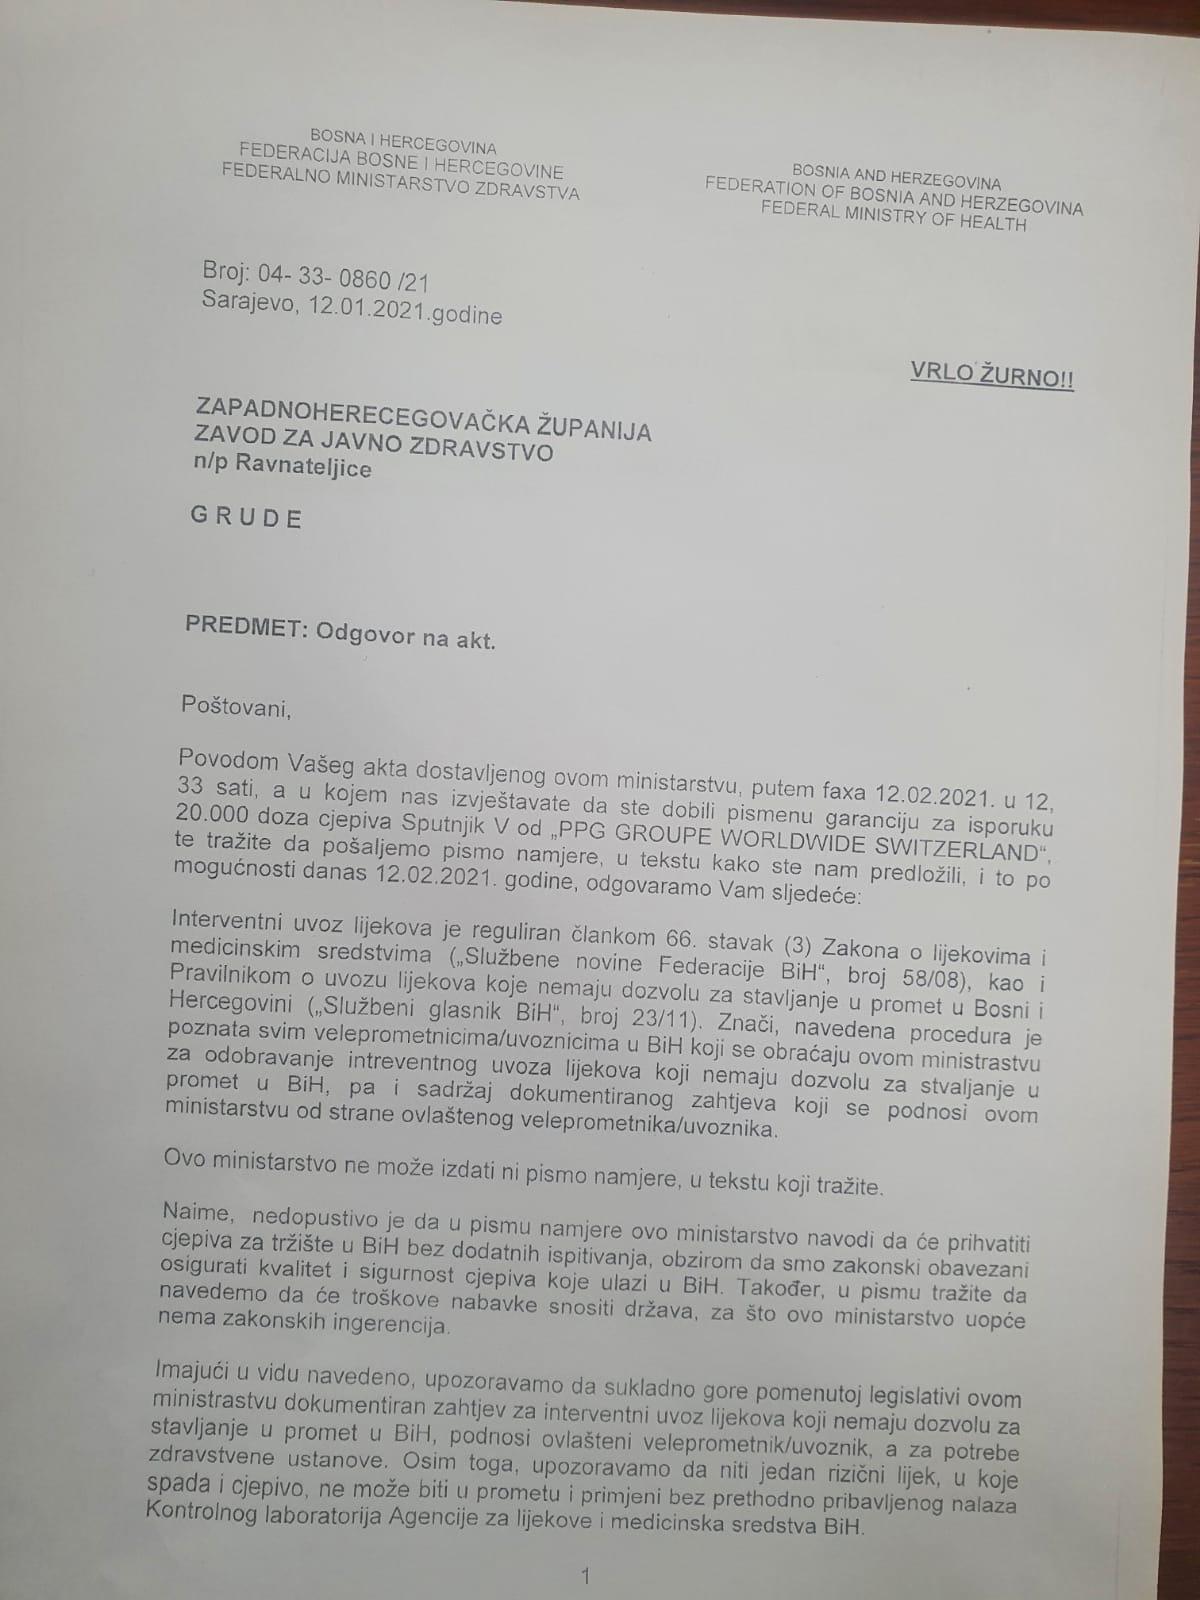 Faksimili dopisa koji je iz ZZJZ ZHK upućen Ministarstvu zravstva FBiH - Avaz